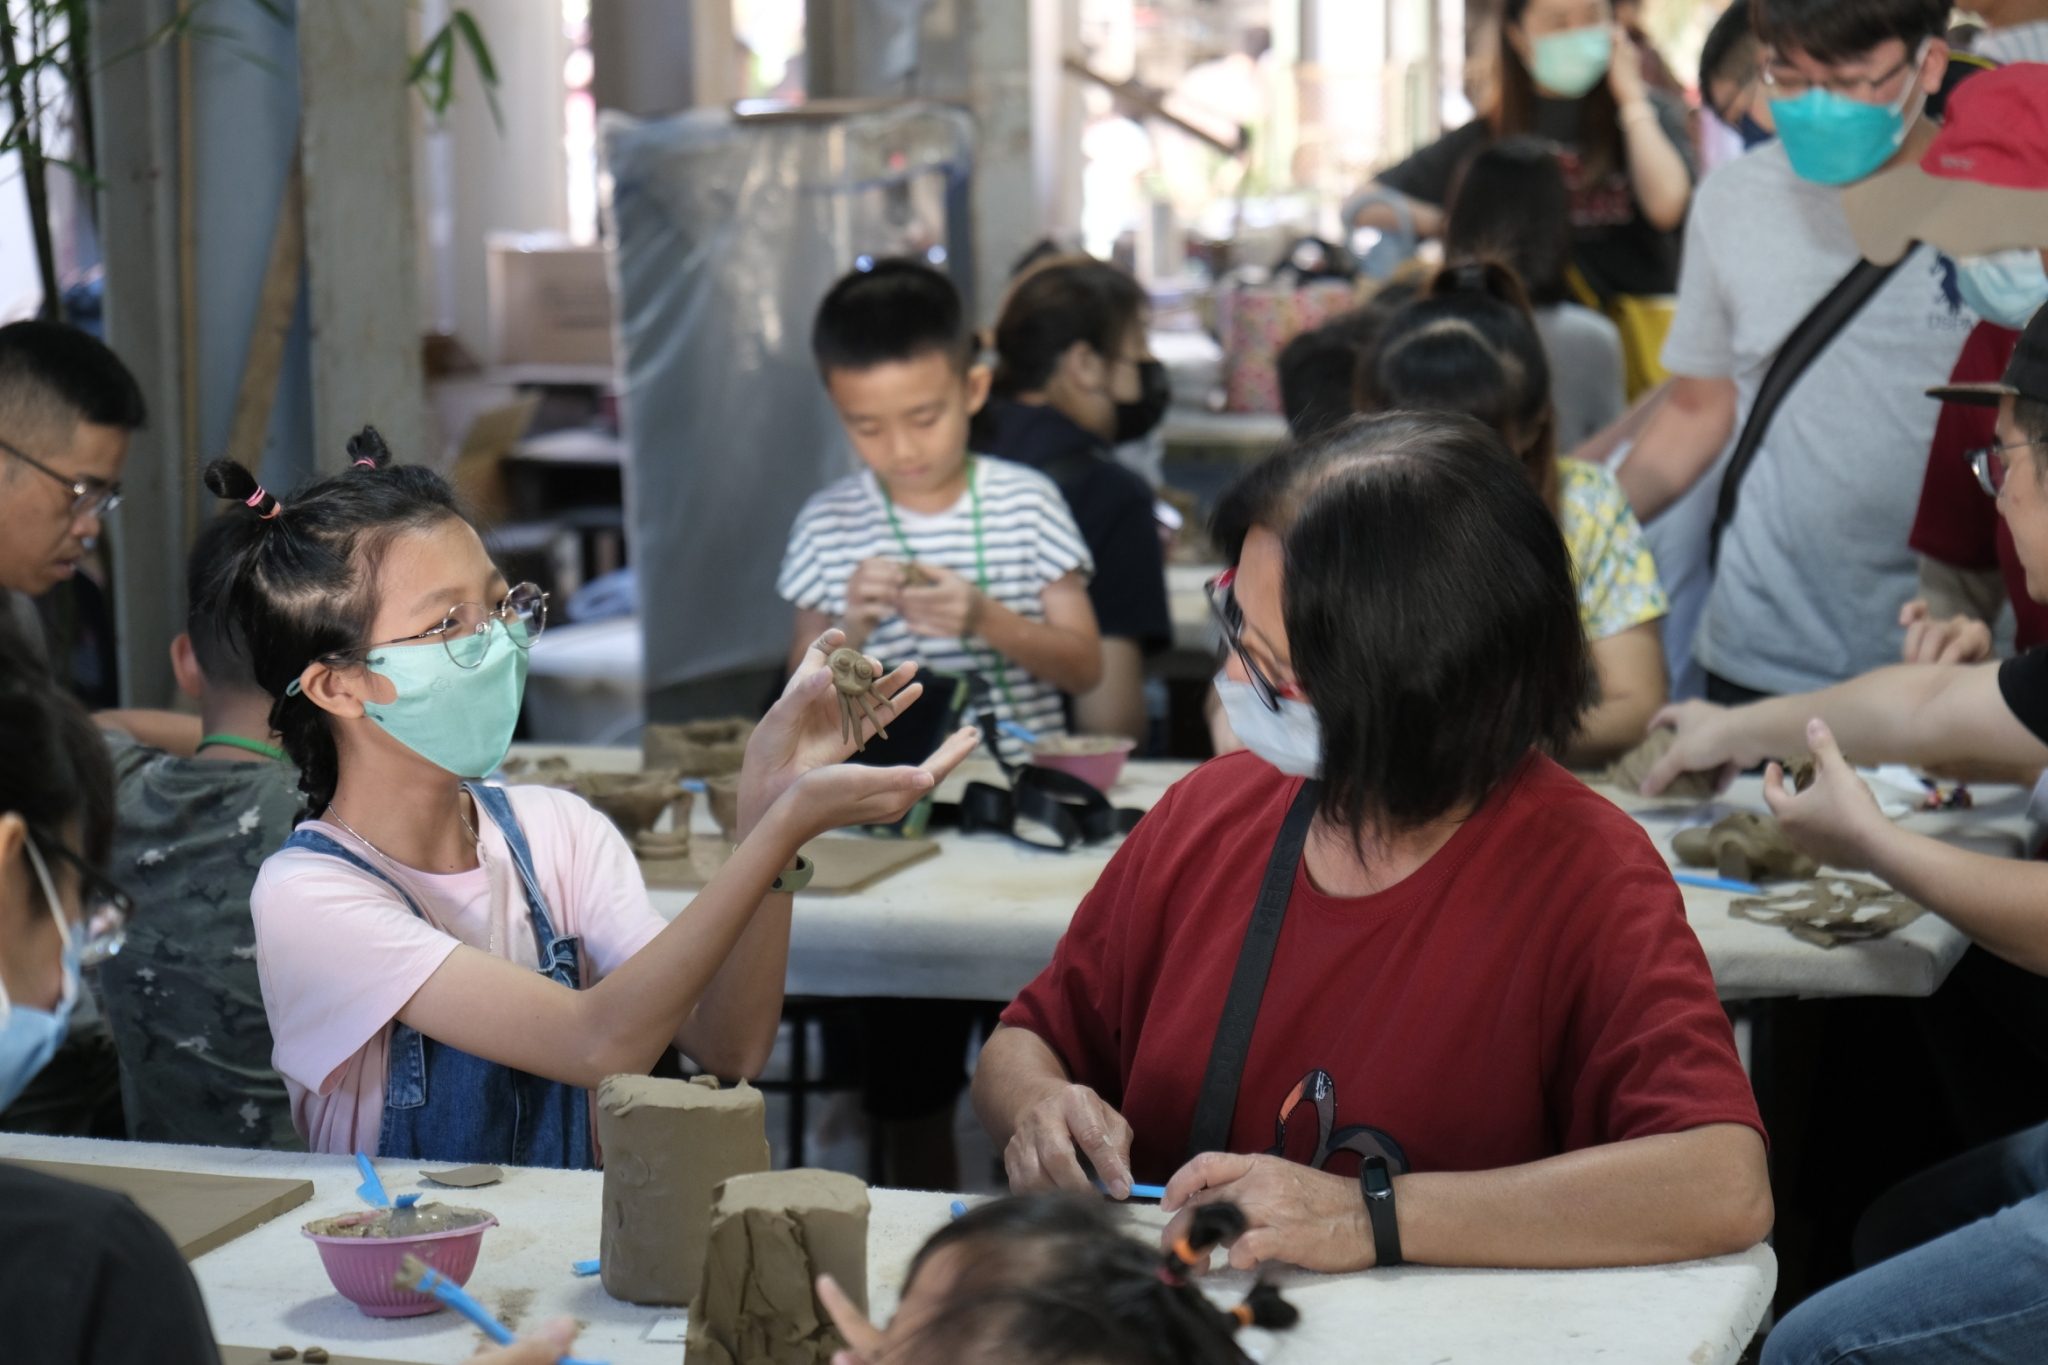 第25屆集集陶藝節 結合文化與觀光 推集集鐵道深度旅遊 - 早安台灣新聞 | Morning Taiwan News